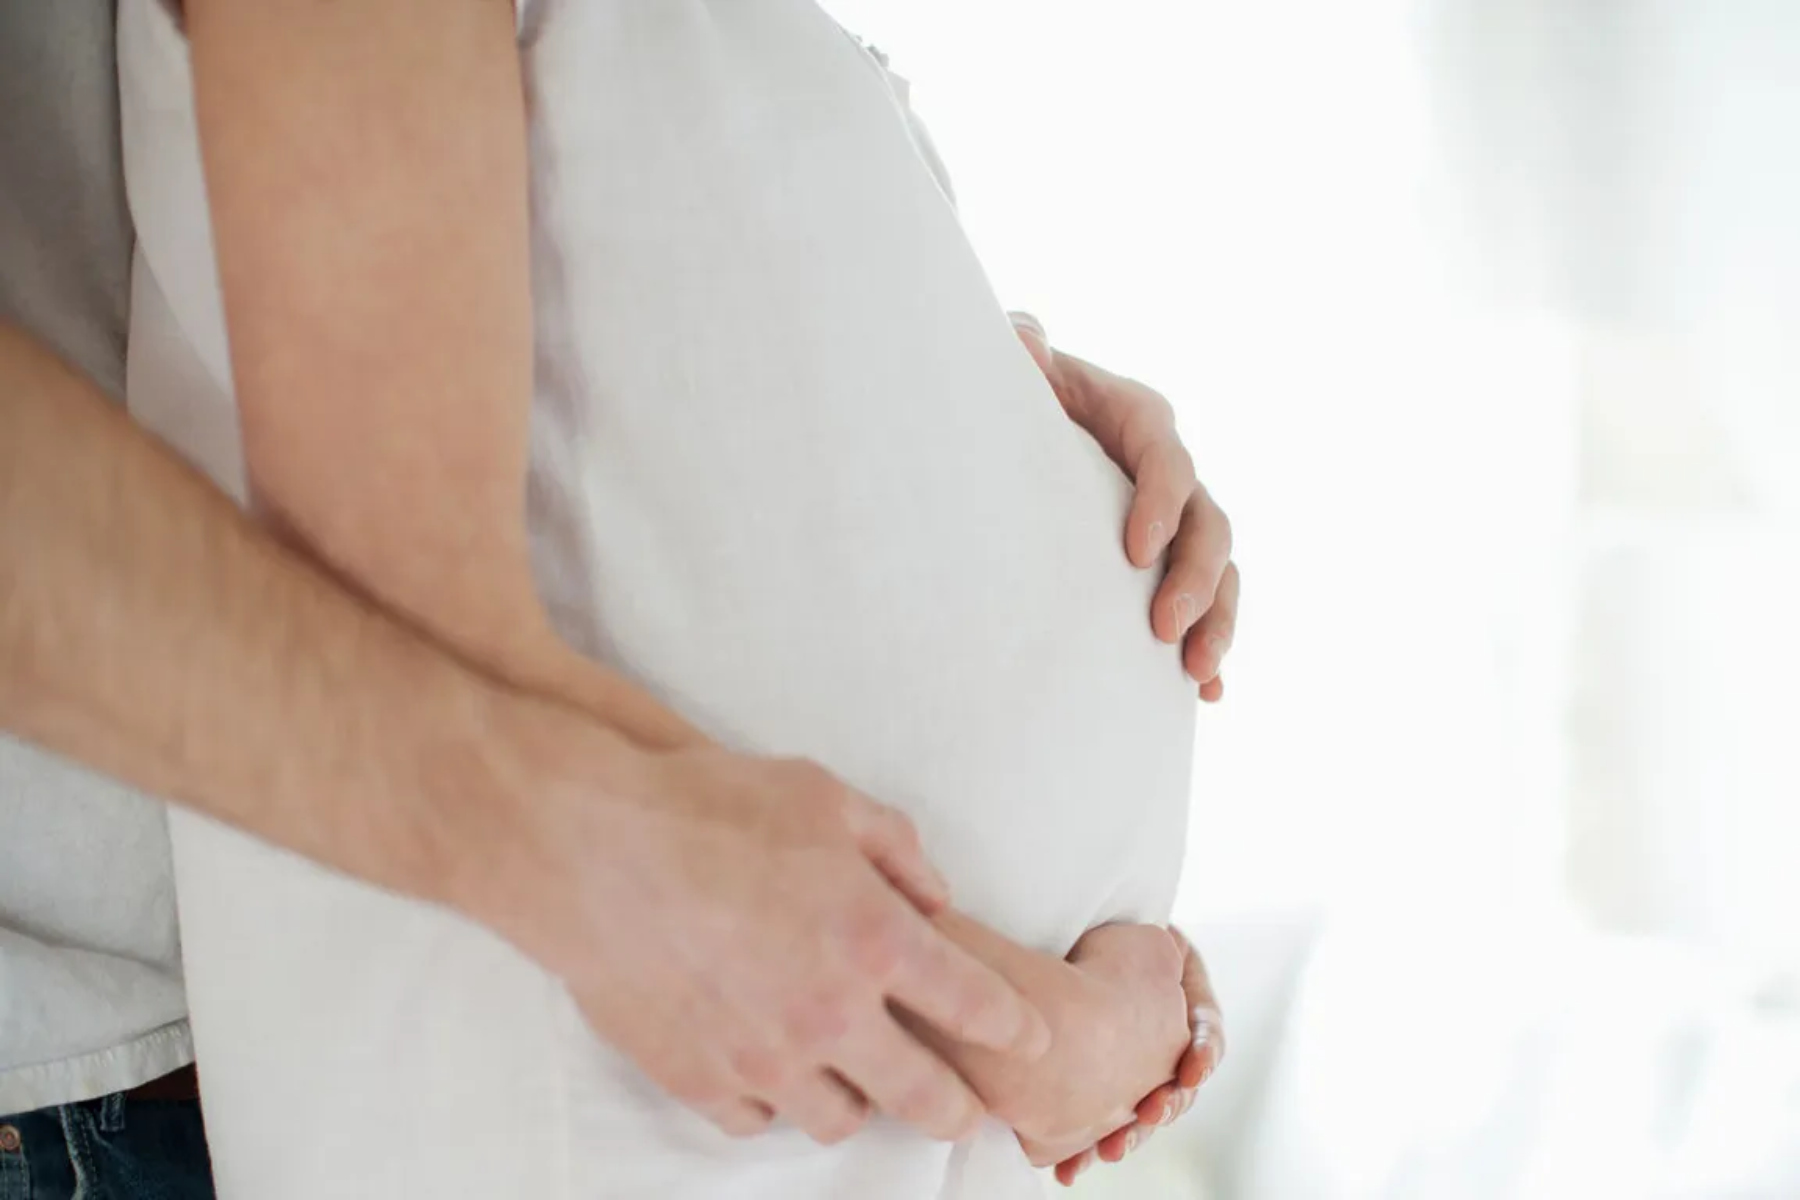 Γονιμότητα: Πώς η τεχνολογία επιδρά θετικά στην αύξηση της γονιμότητας;